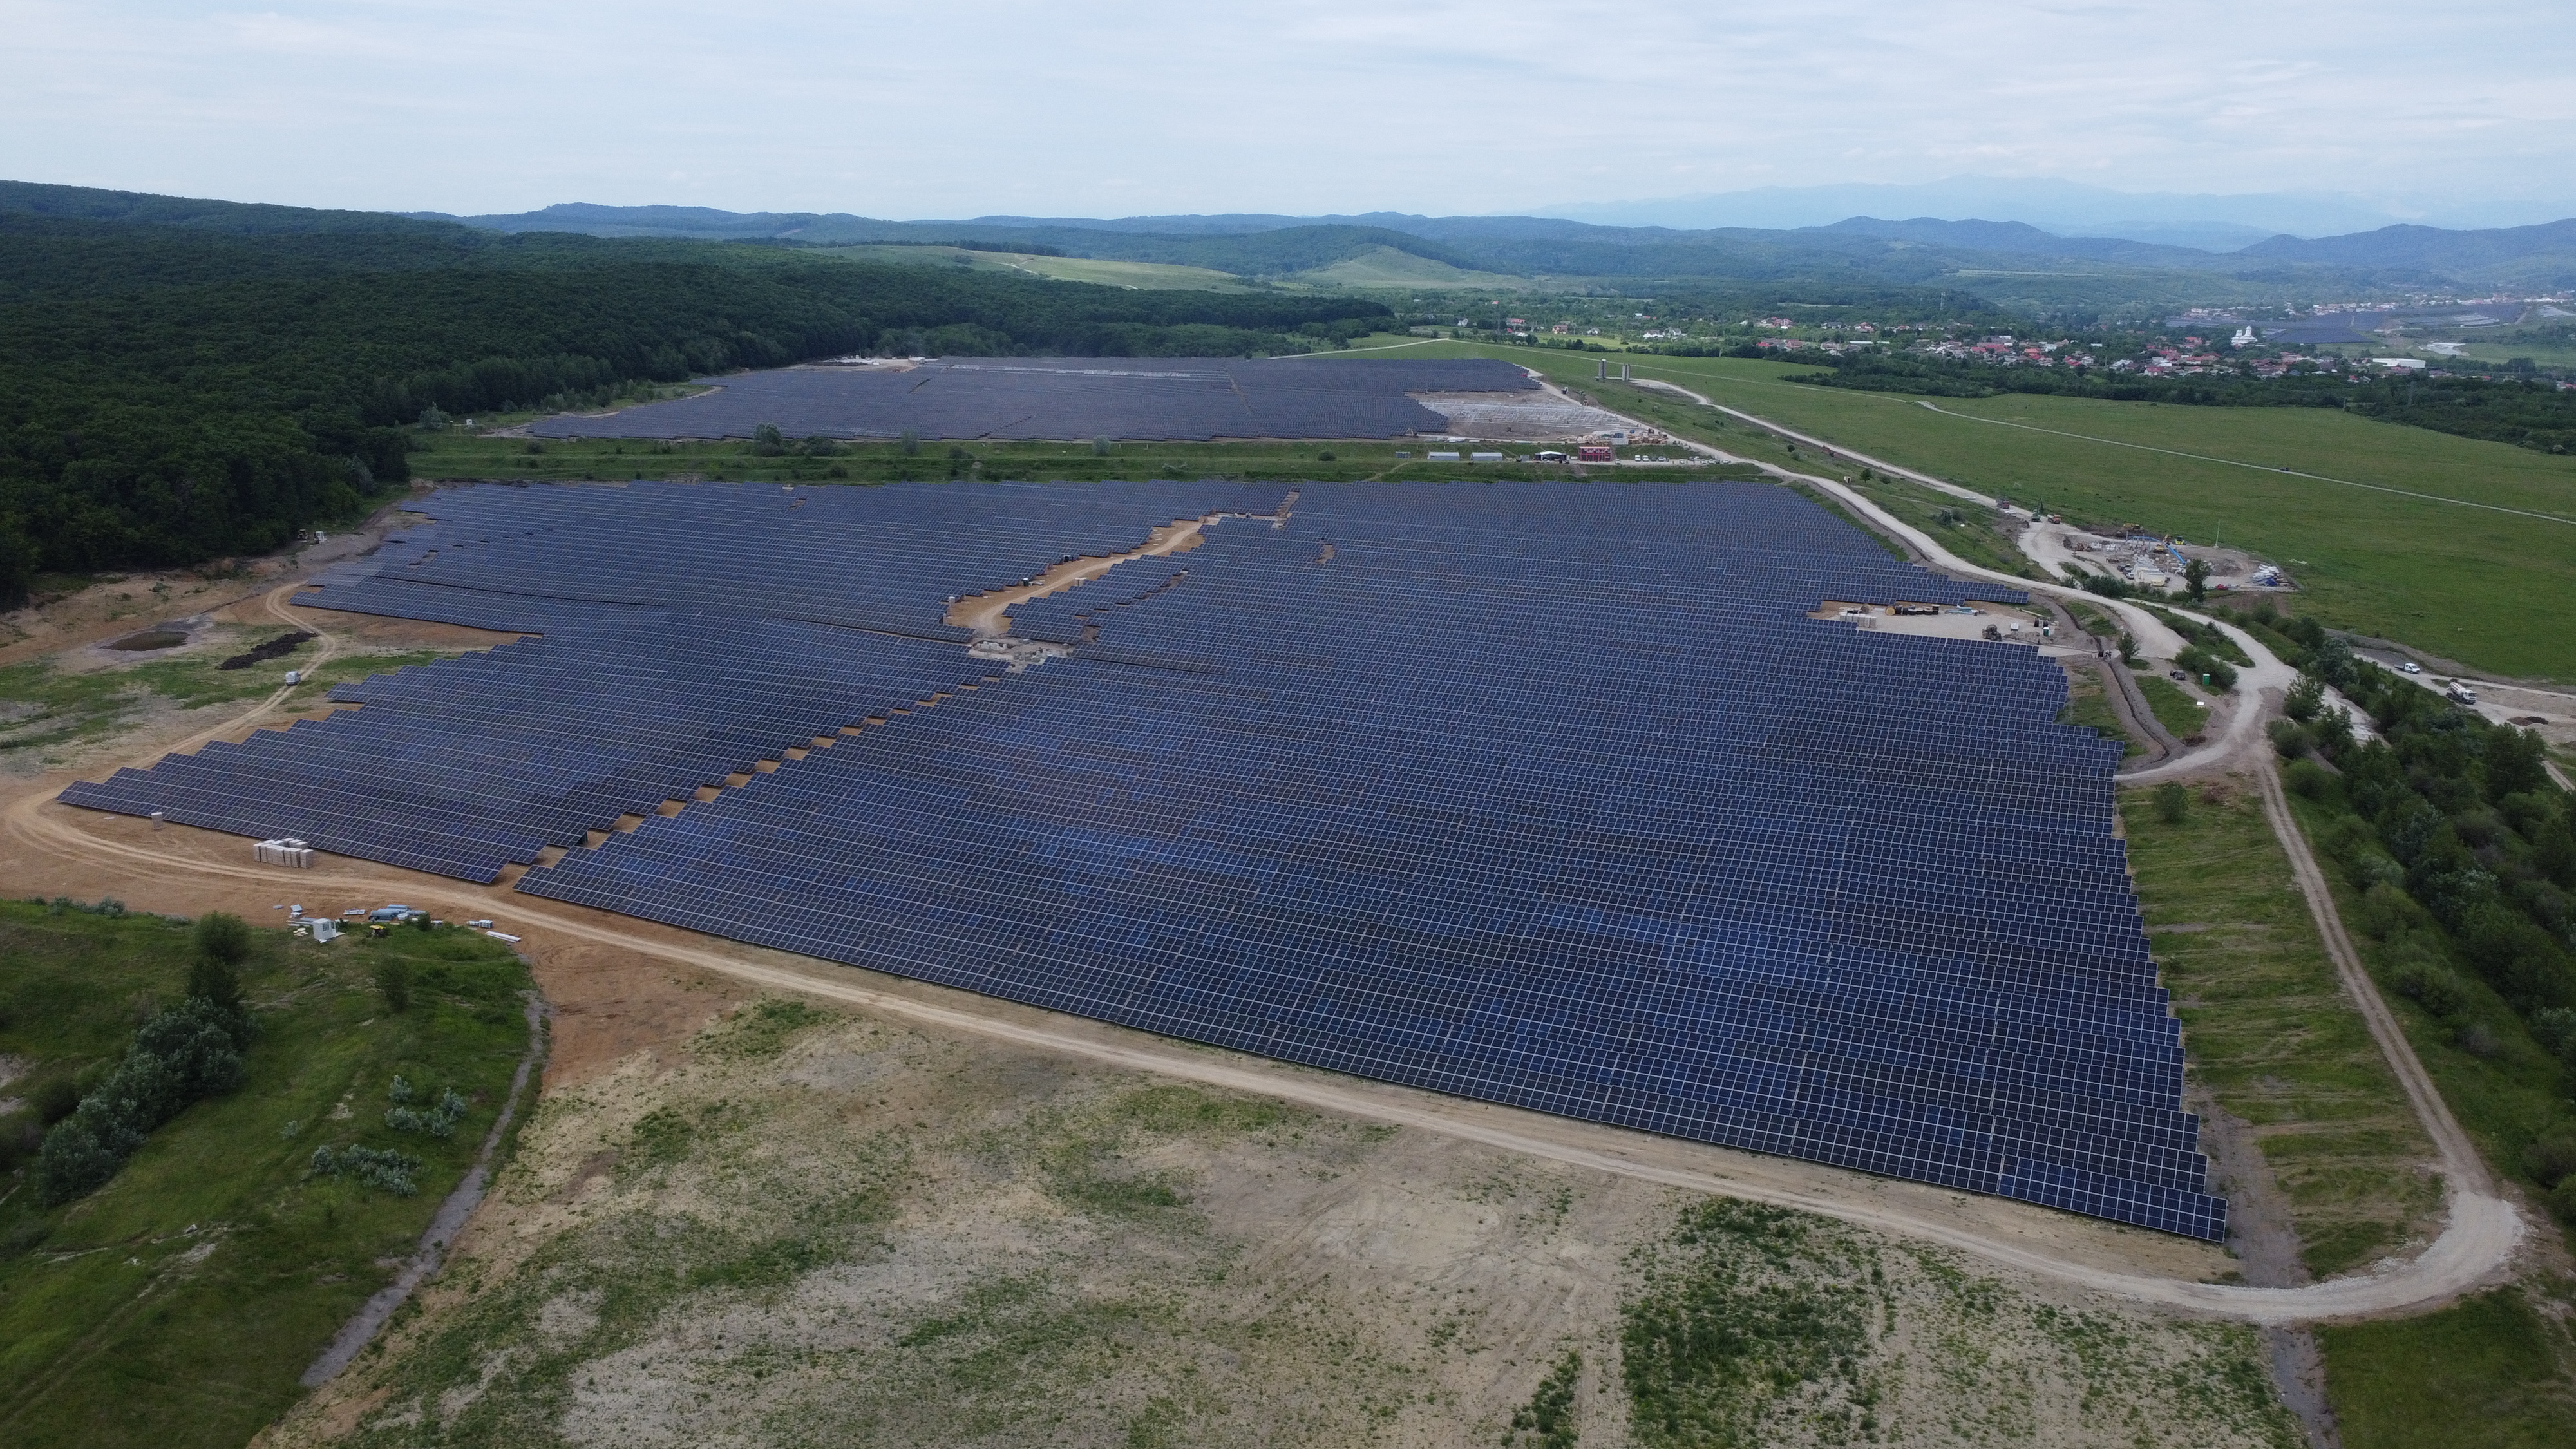 Un parc fotovoltaic de 80 MW a fost pus în funcţiune la Doiceşti-Şotânga. Investiţia face parte din proiectul energetic care va cuprinde şi prima centrală nucleară de mici dimensiuni din lume, dezvoltată de americanii de la NuScale